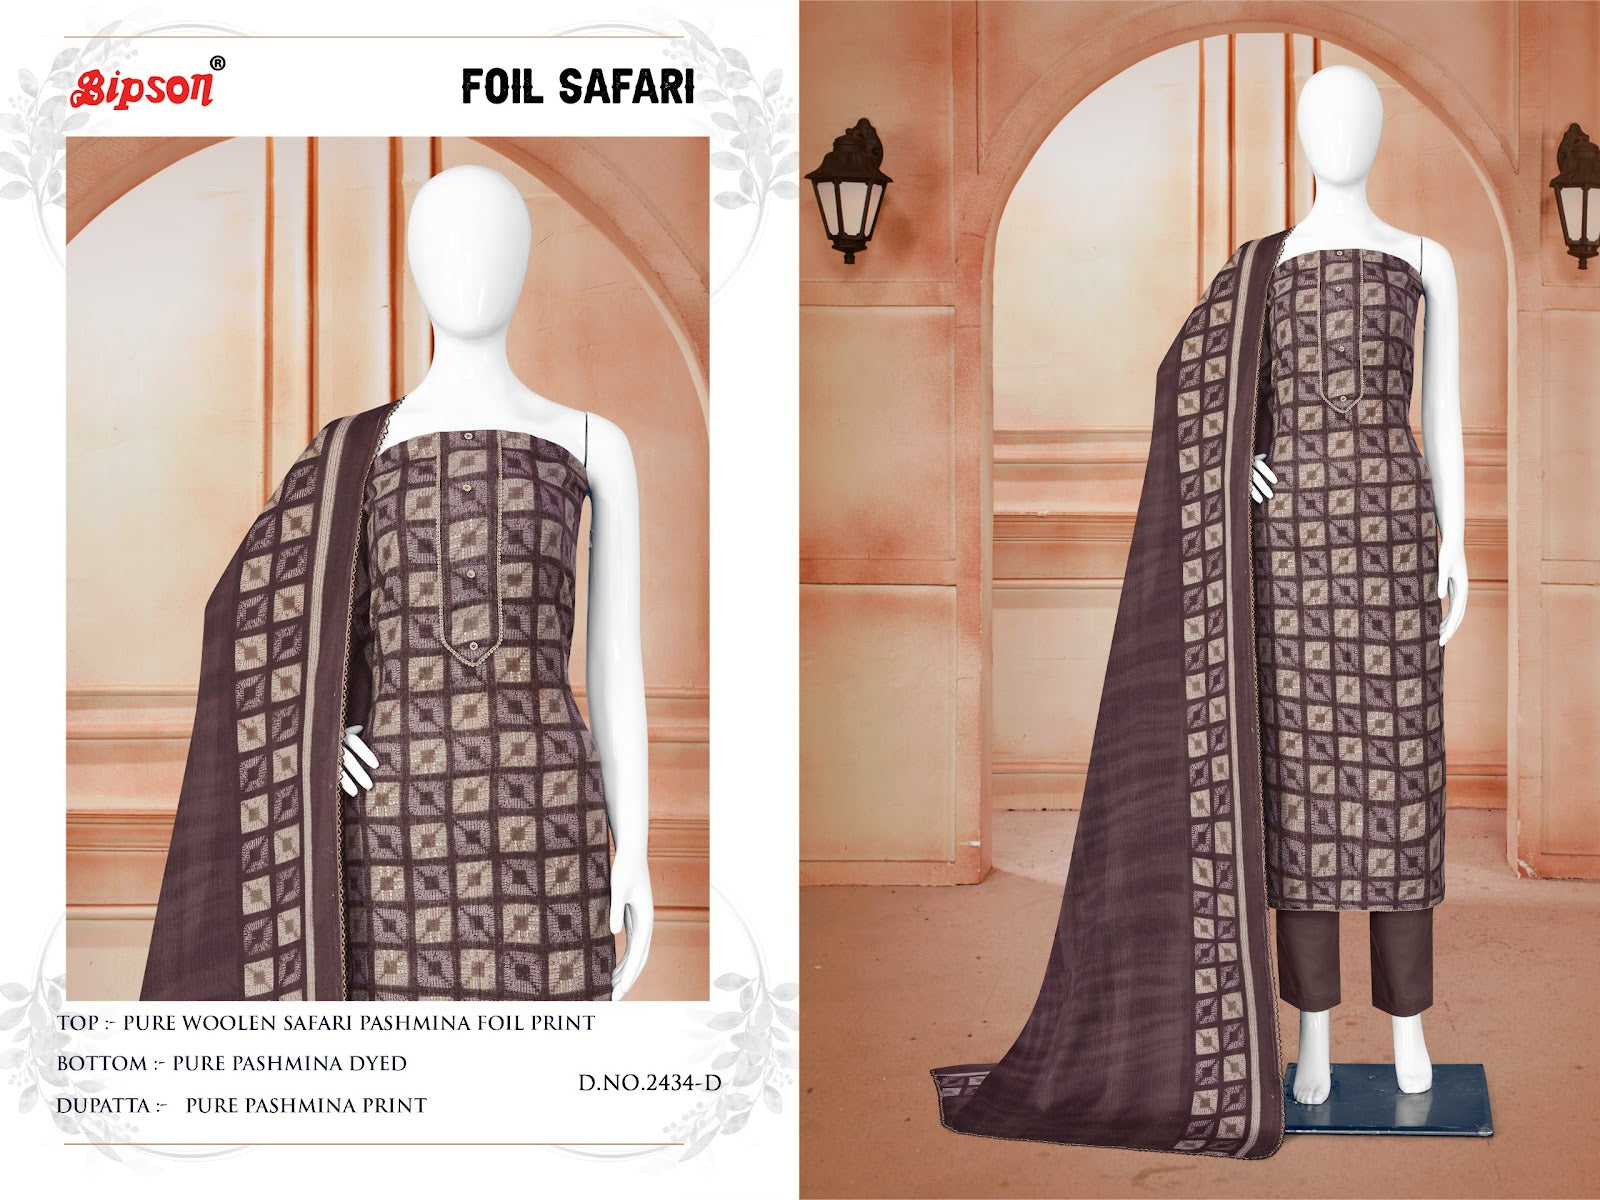 Foil Safari-2434 Bipson Prints Woolen Pashmina Suits